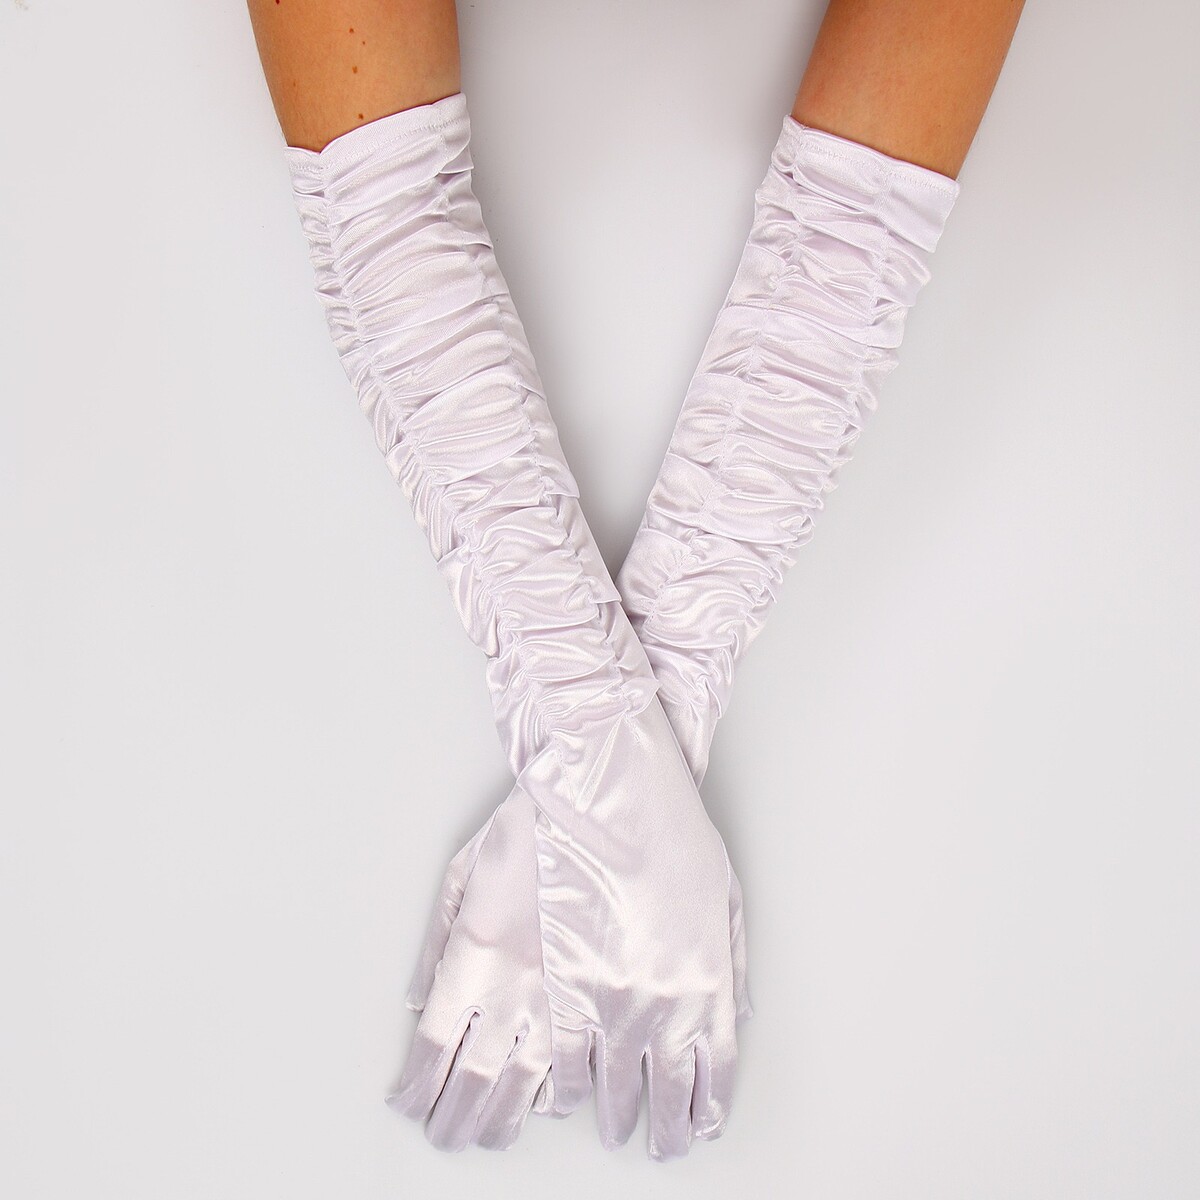 Карнавальный аксессуар - перчатки со сборкой, цвет белый карнавальный костюм batik 9014 к 21 базз лайтер белый 122